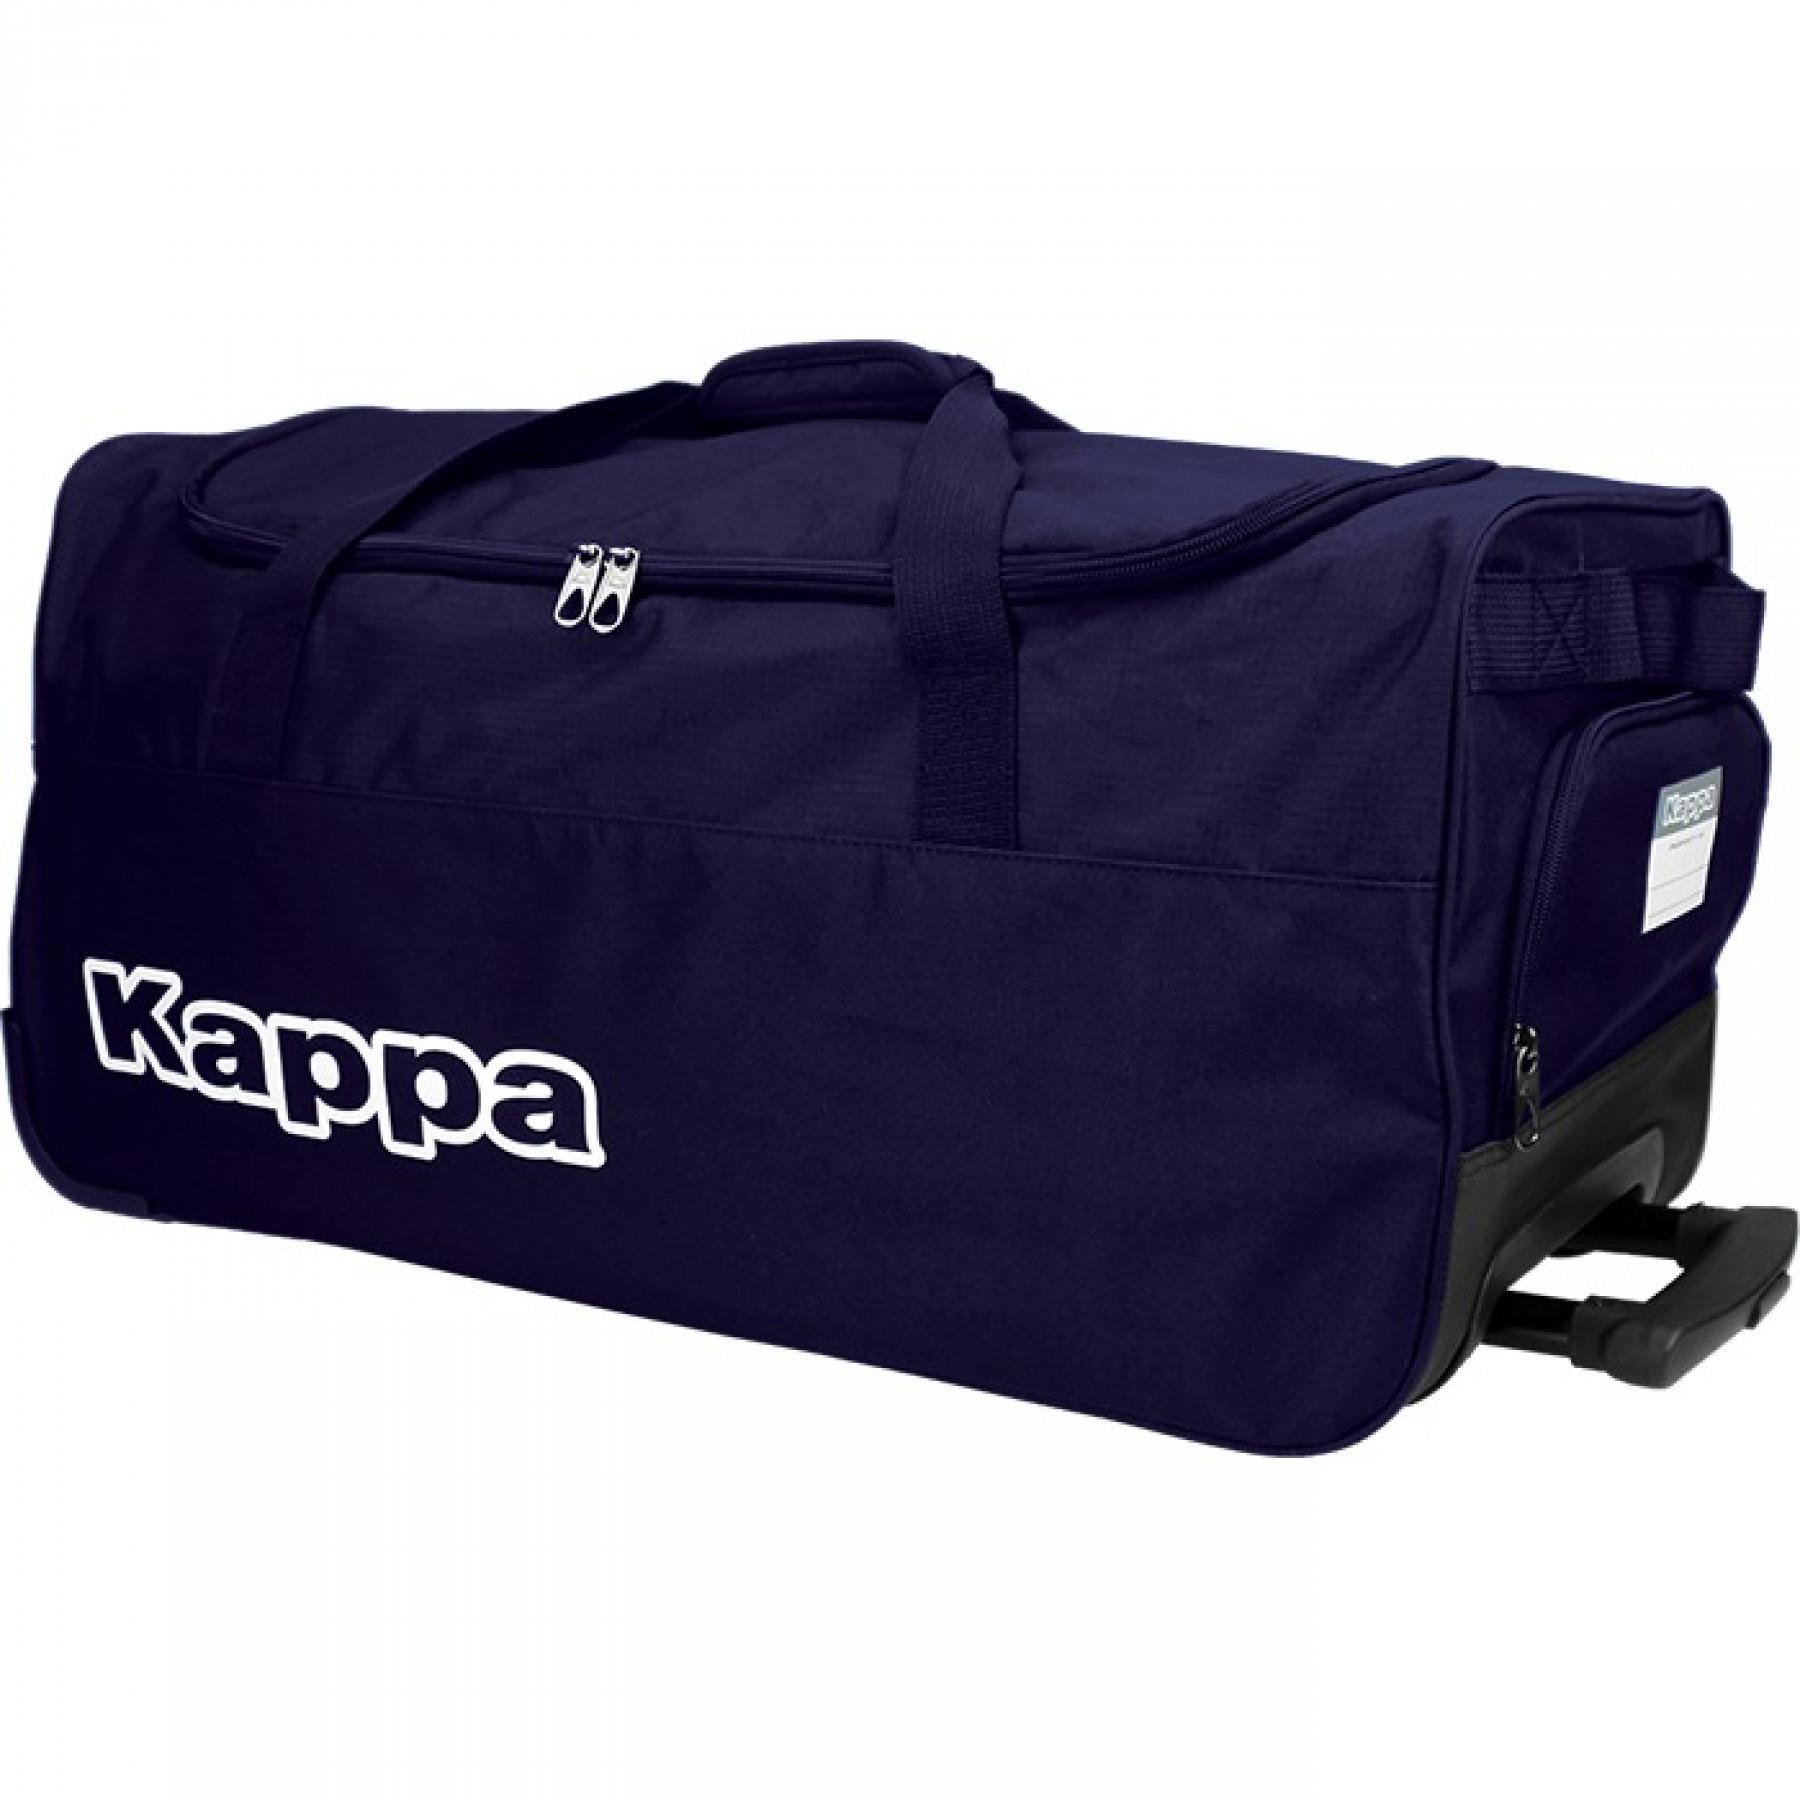 Onverbiddelijk toxiciteit stuiten op Rolling bag medium Kappa Tarcisio - Bags - Equipment